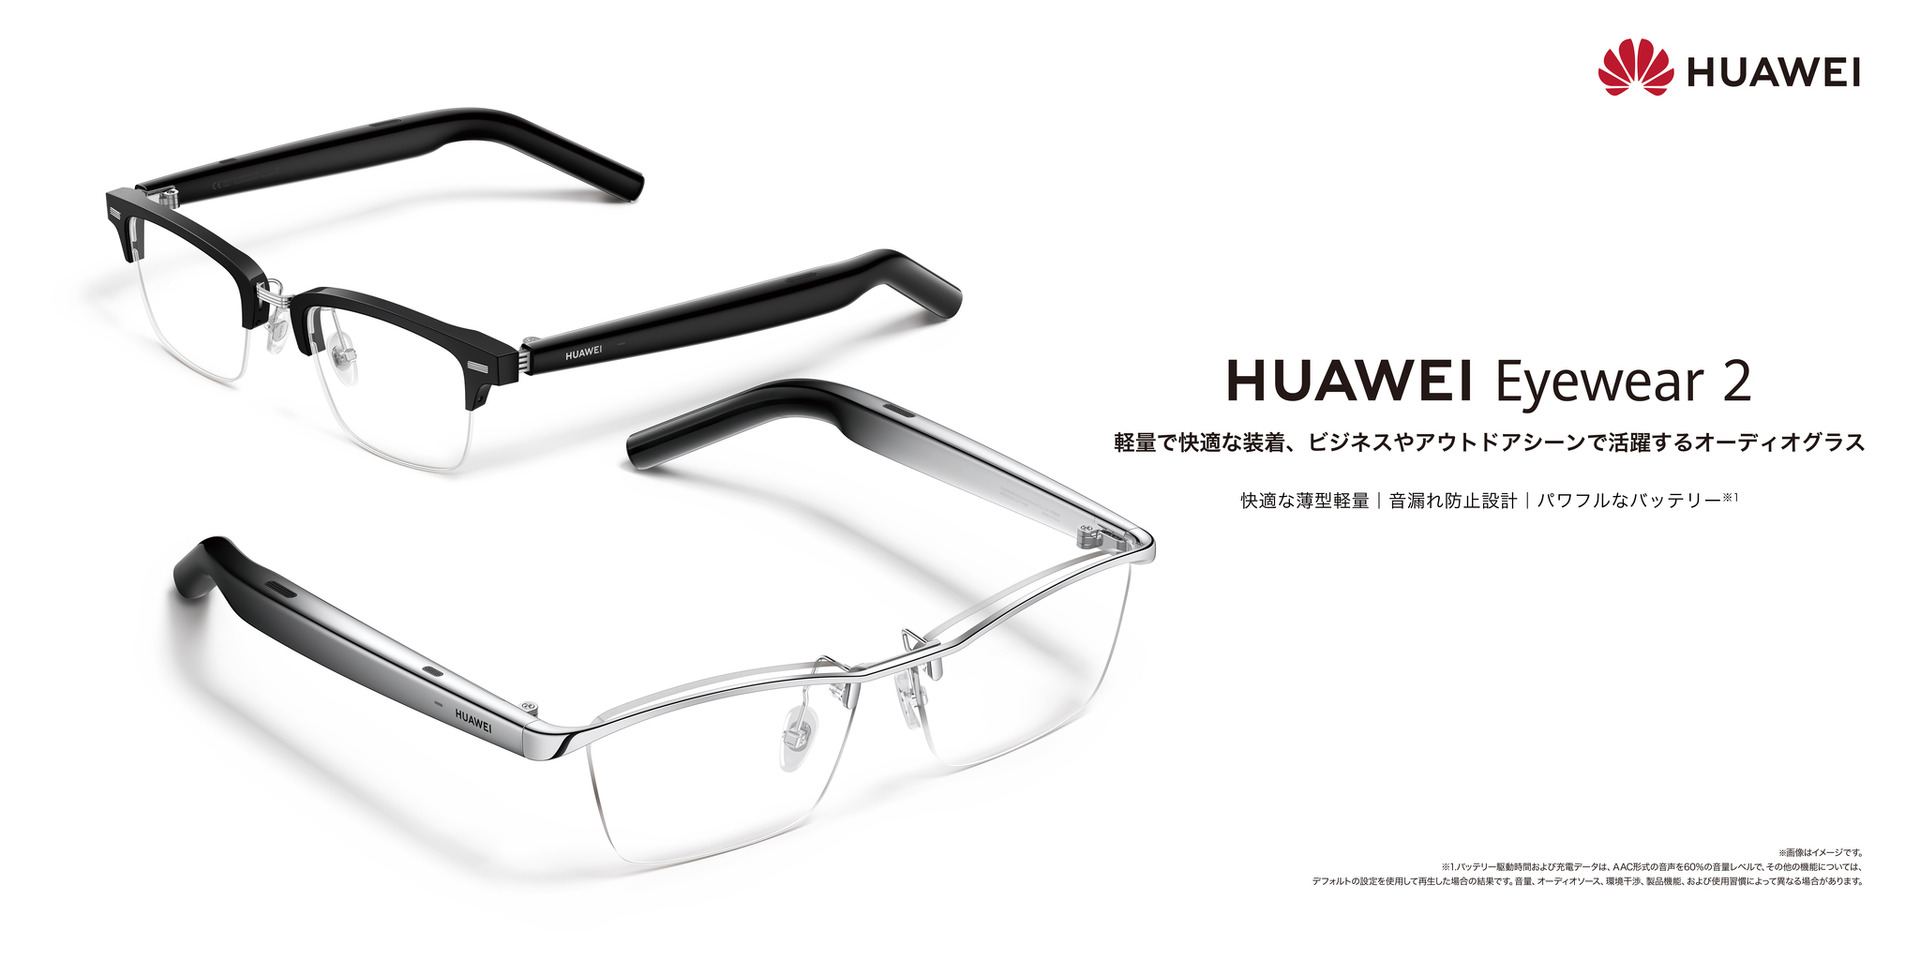 聴こえるメガネHuawei Eyewear 2は国内11月9日発売、3万7800円から ...